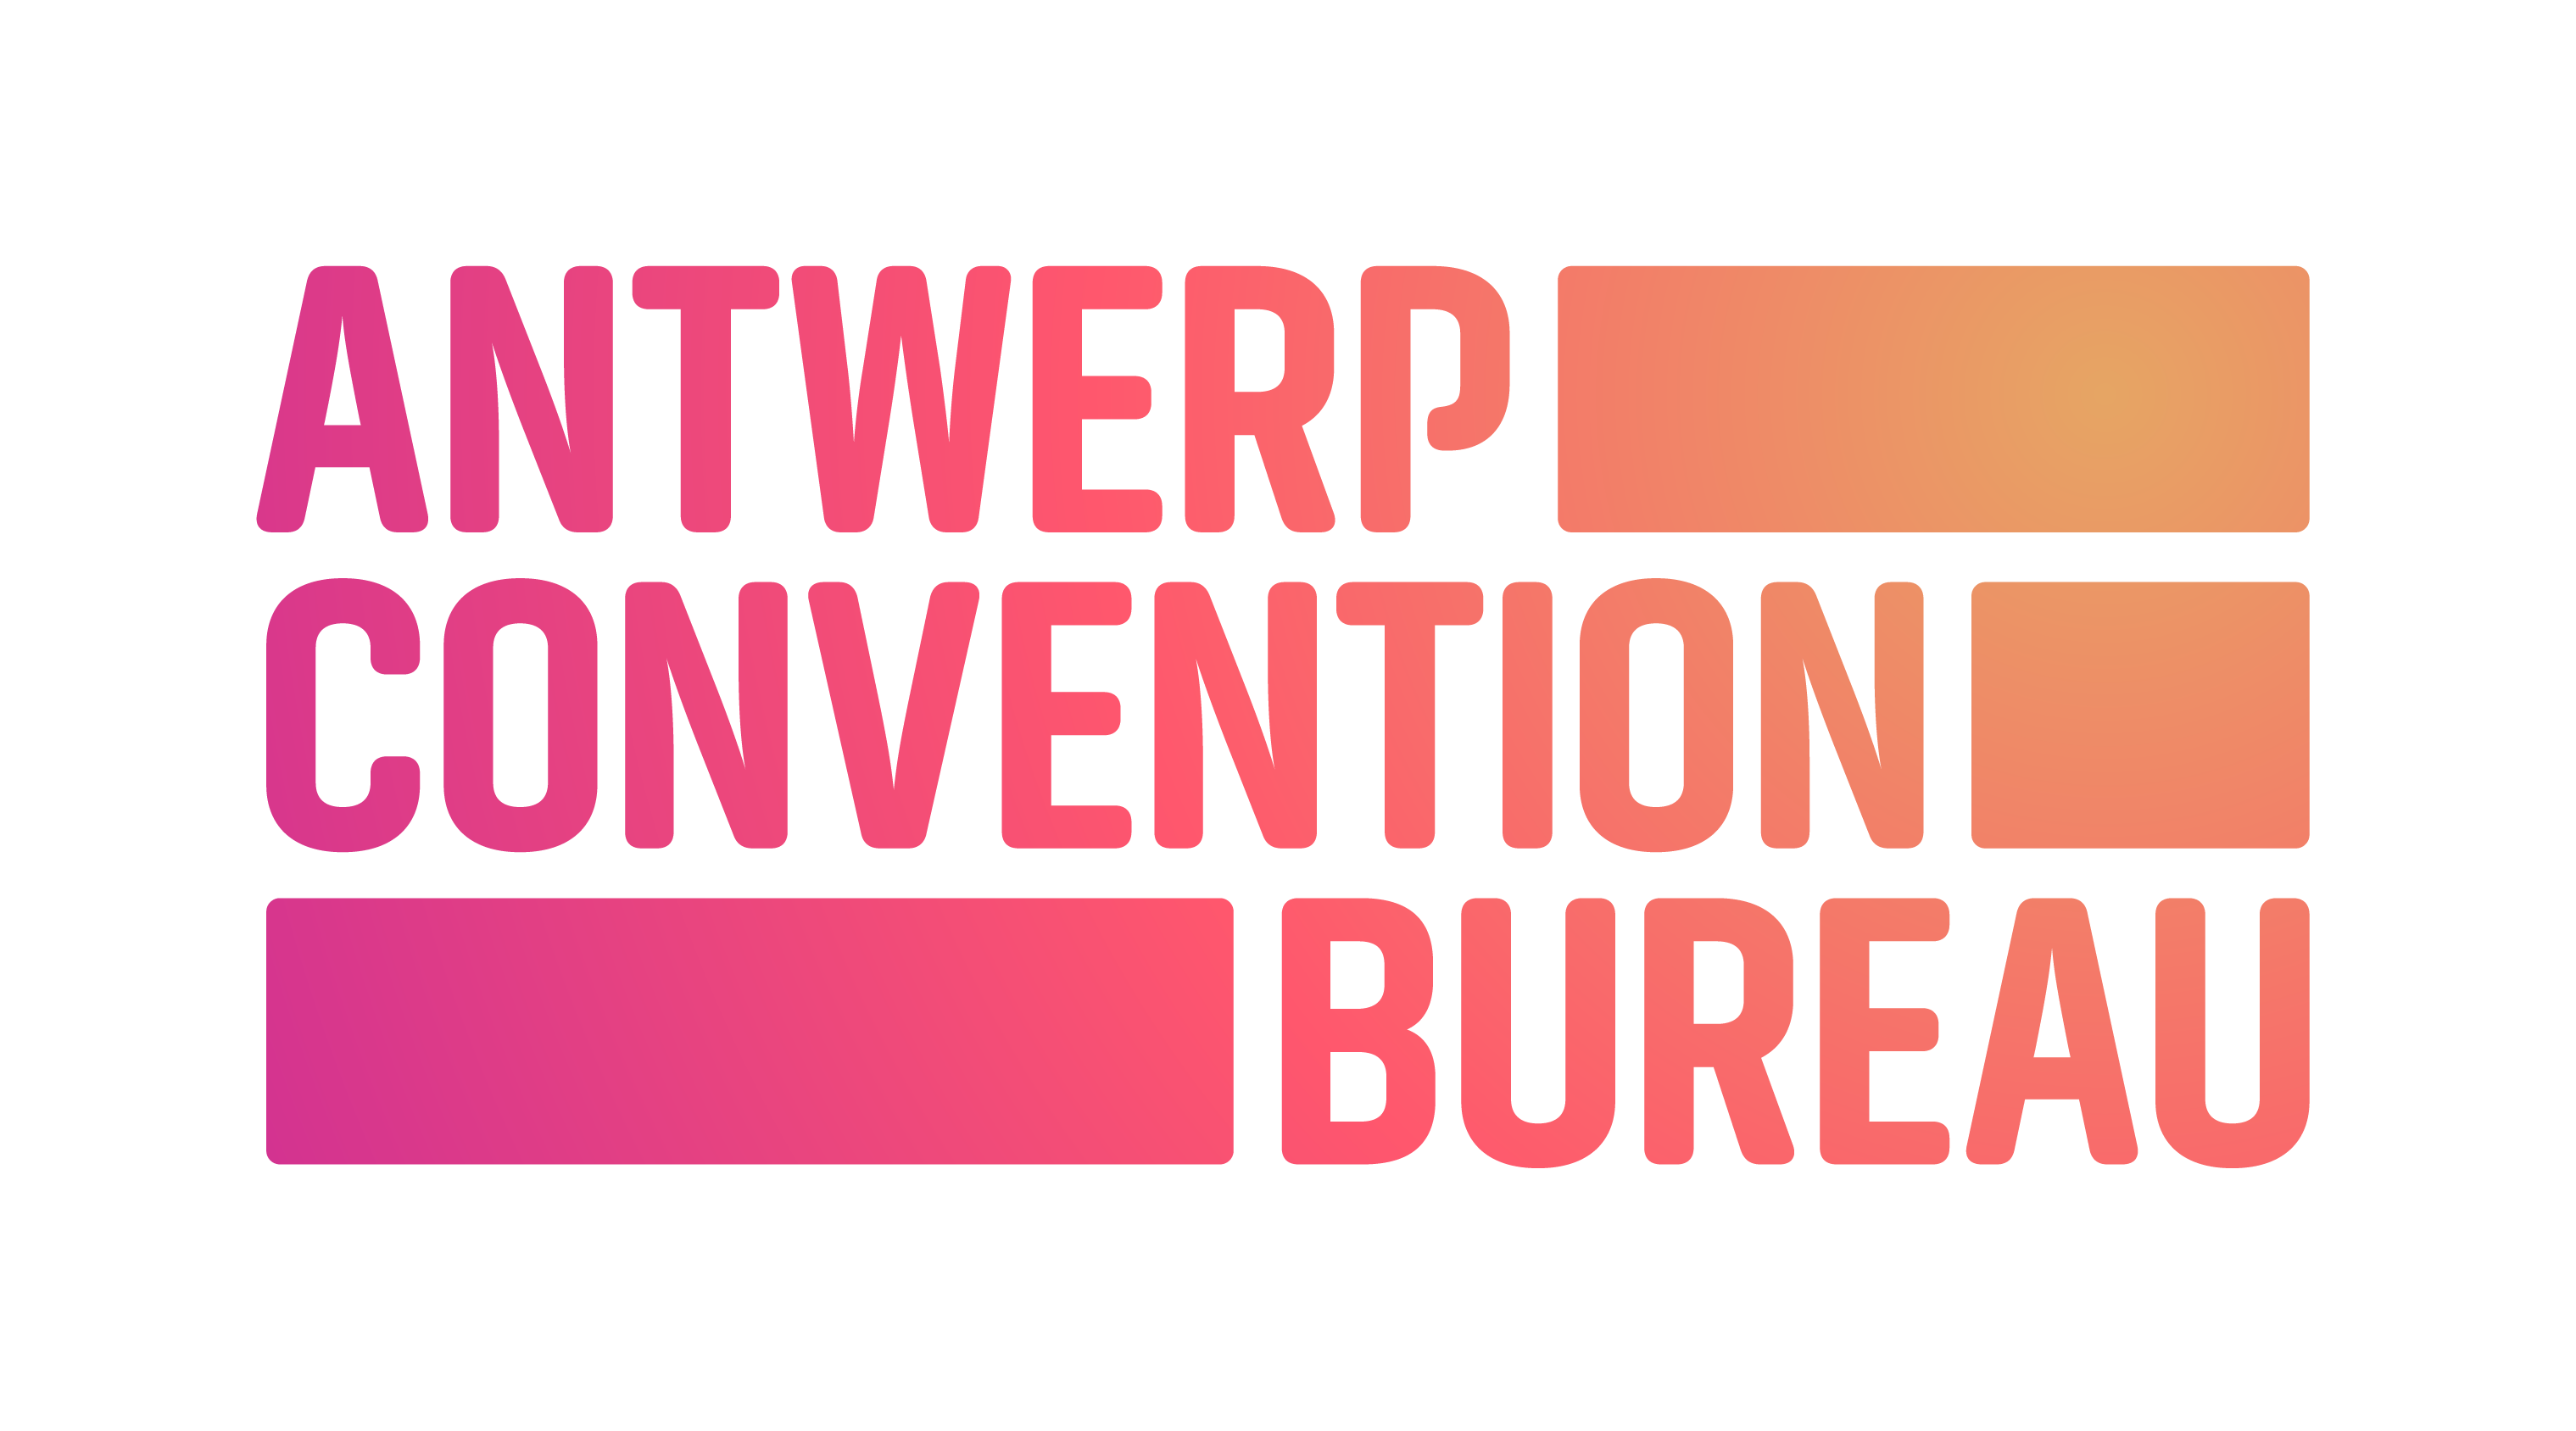 Antwerp Convention Bureau